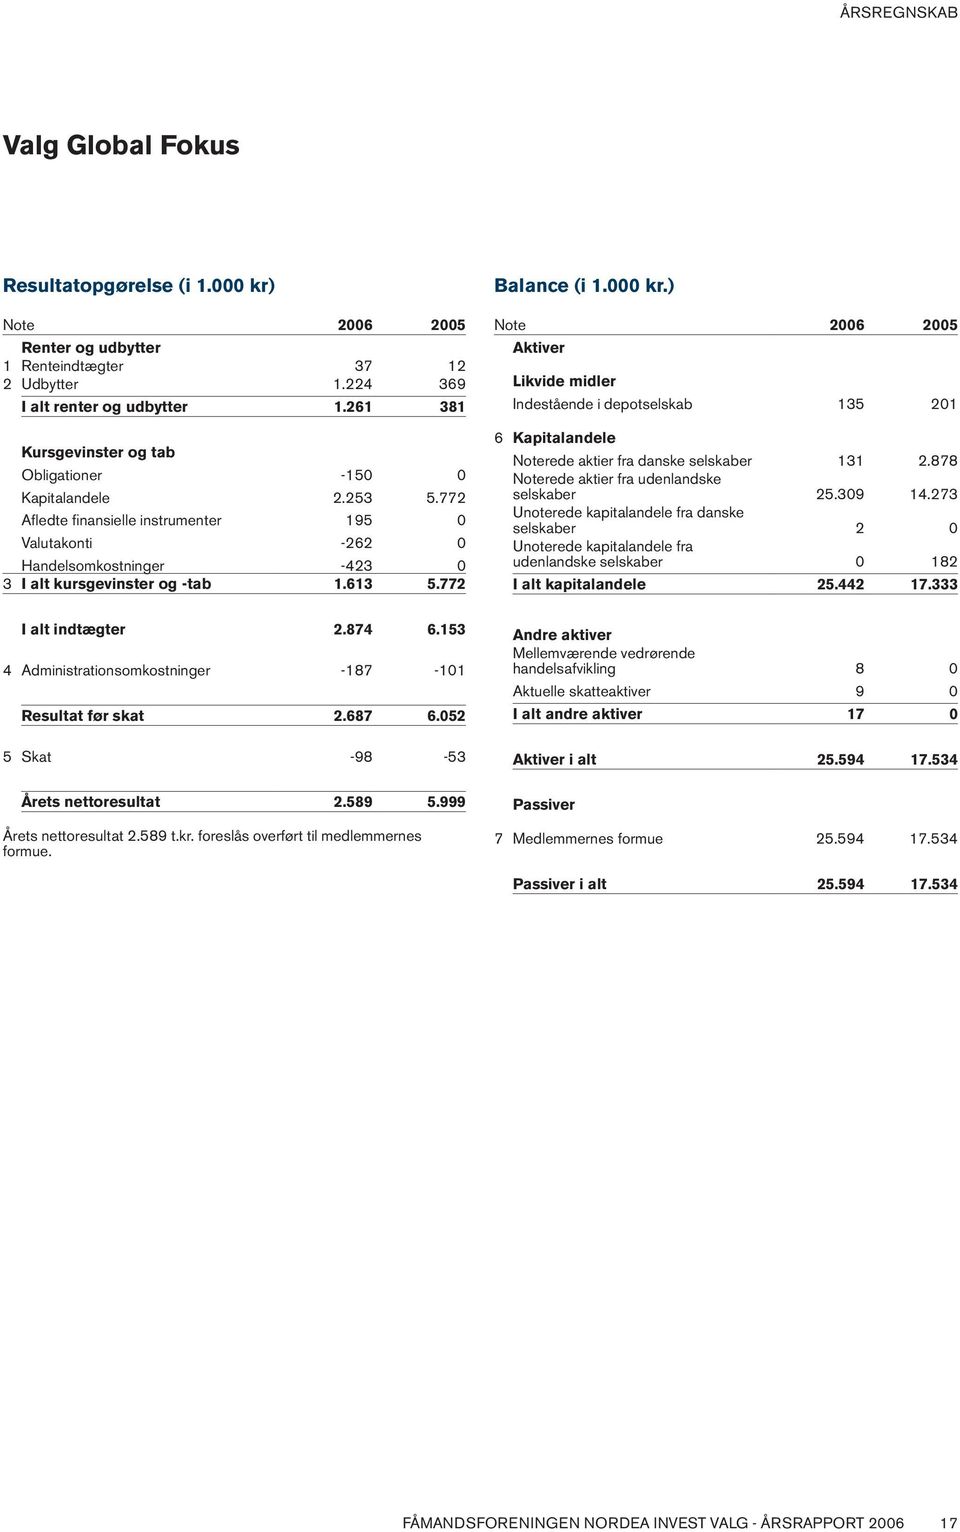 772 Balance (i 1.000 kr.) Note 2006 2005 Aktiver Likvide midler Indestående i depotselskab 135 201 6 Kapitalandele Noterede aktier fra danske selskaber 131 2.